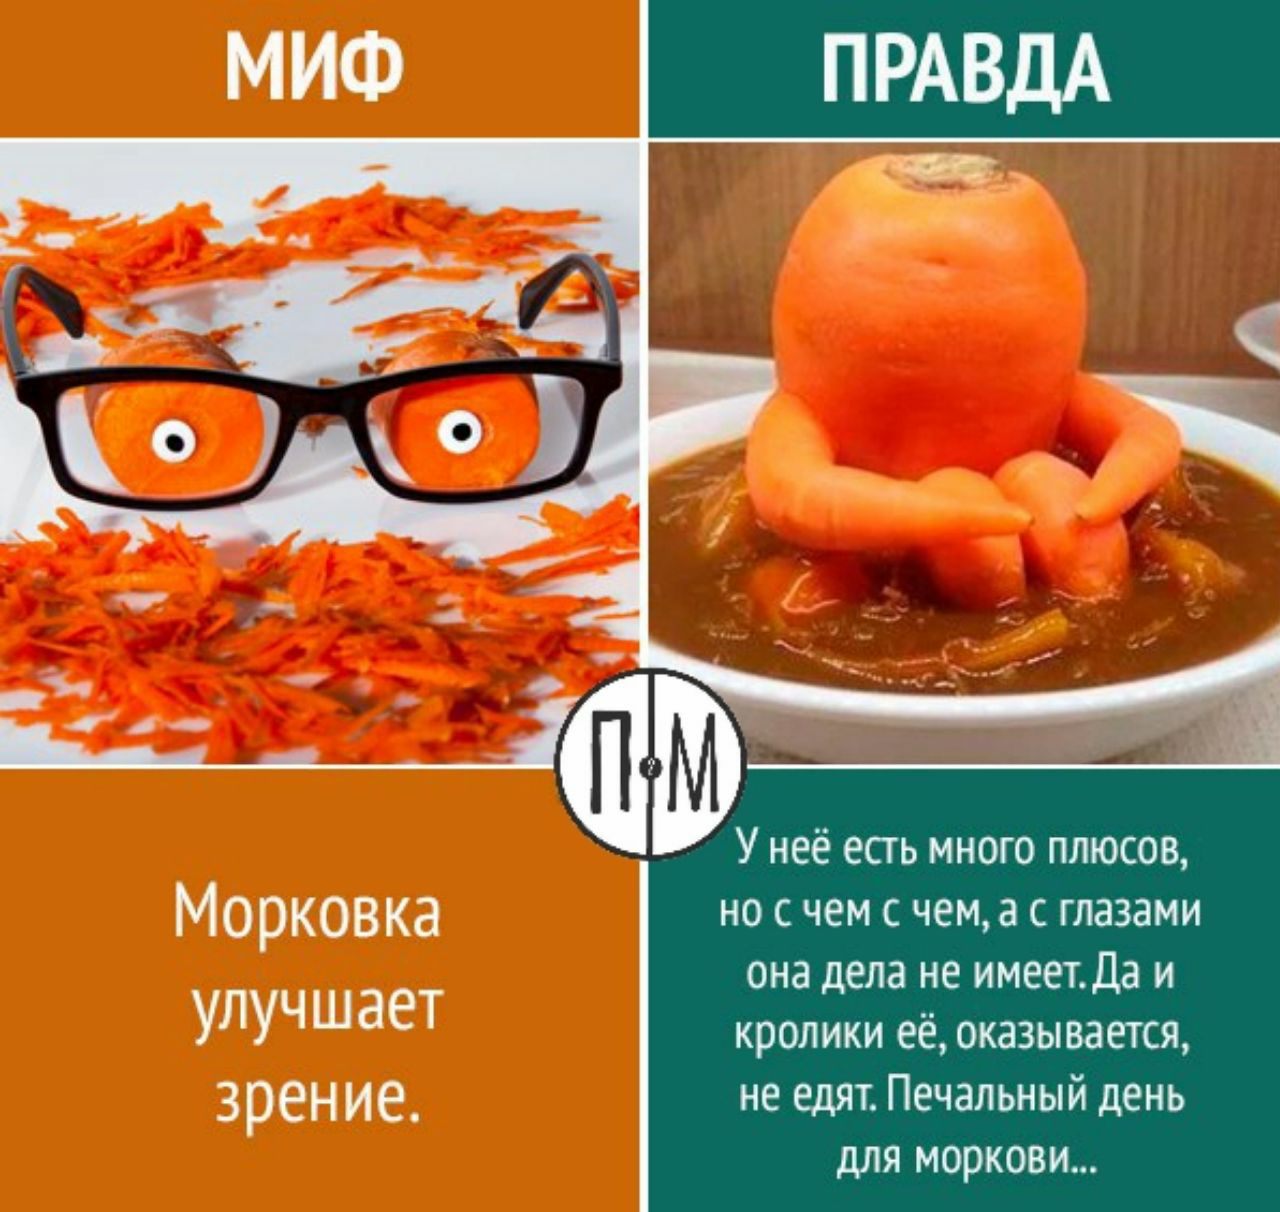 Почему нельзя морковь. Морковь полезна для зрения. Морковь улучшает зрение. Миф правда. Правда или миф.